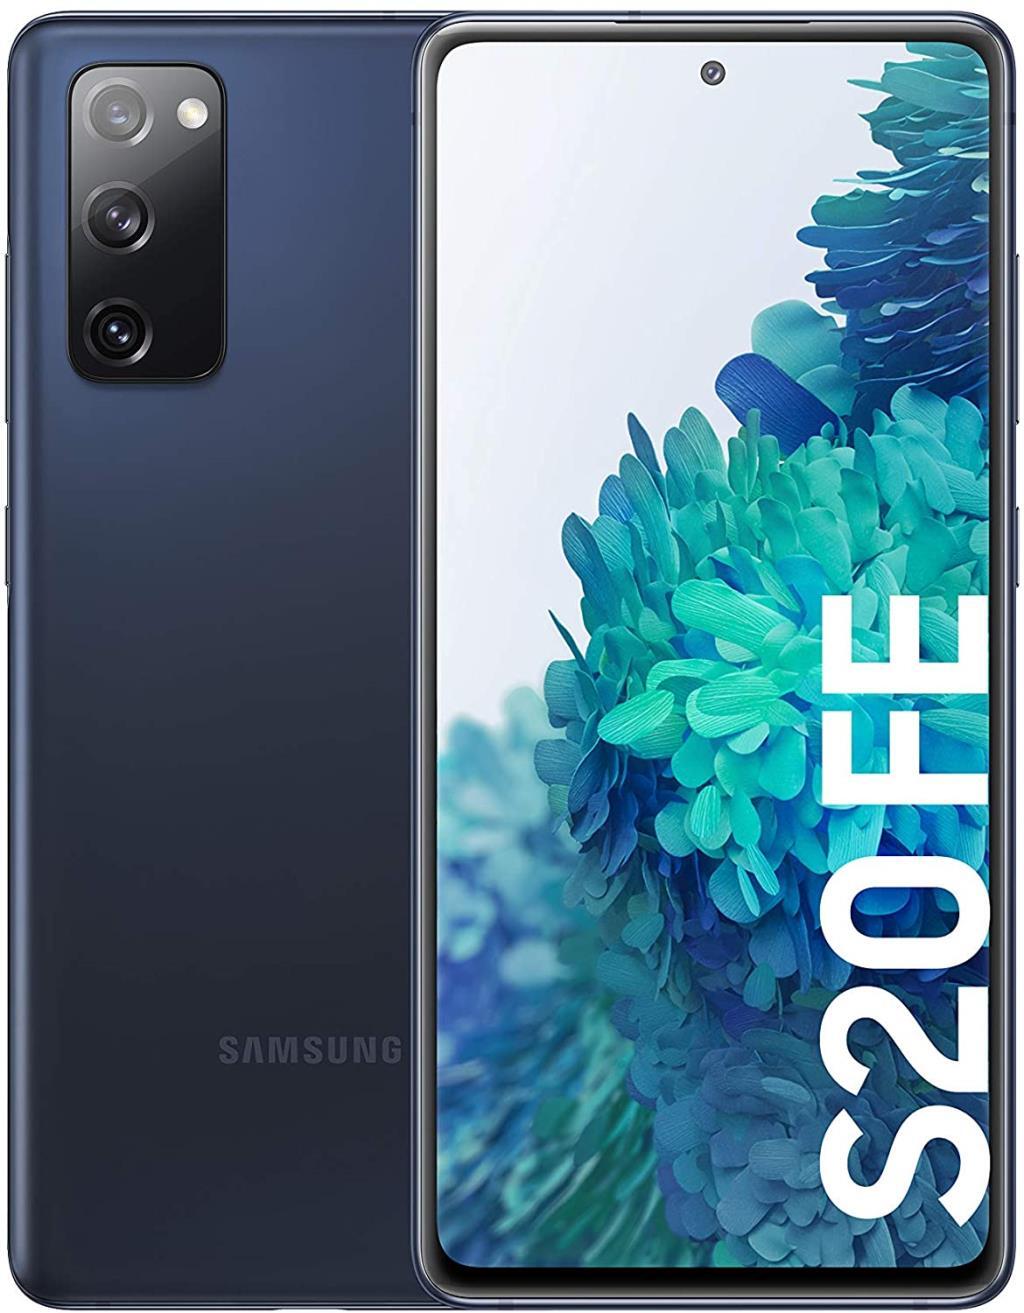 Samsung Galaxy S20 fe 5g 128gb+6gb ram libre fan edition 1651 cm 65“ fhd+ 1286 azul smartphone con pantalla infinityo de 65 pulgadas 6 y 128 memoria interna ampliable batería 4500 mah carga version 128gb 6.5 6gb 4g 990 ip68 6gb128gb 6128gb